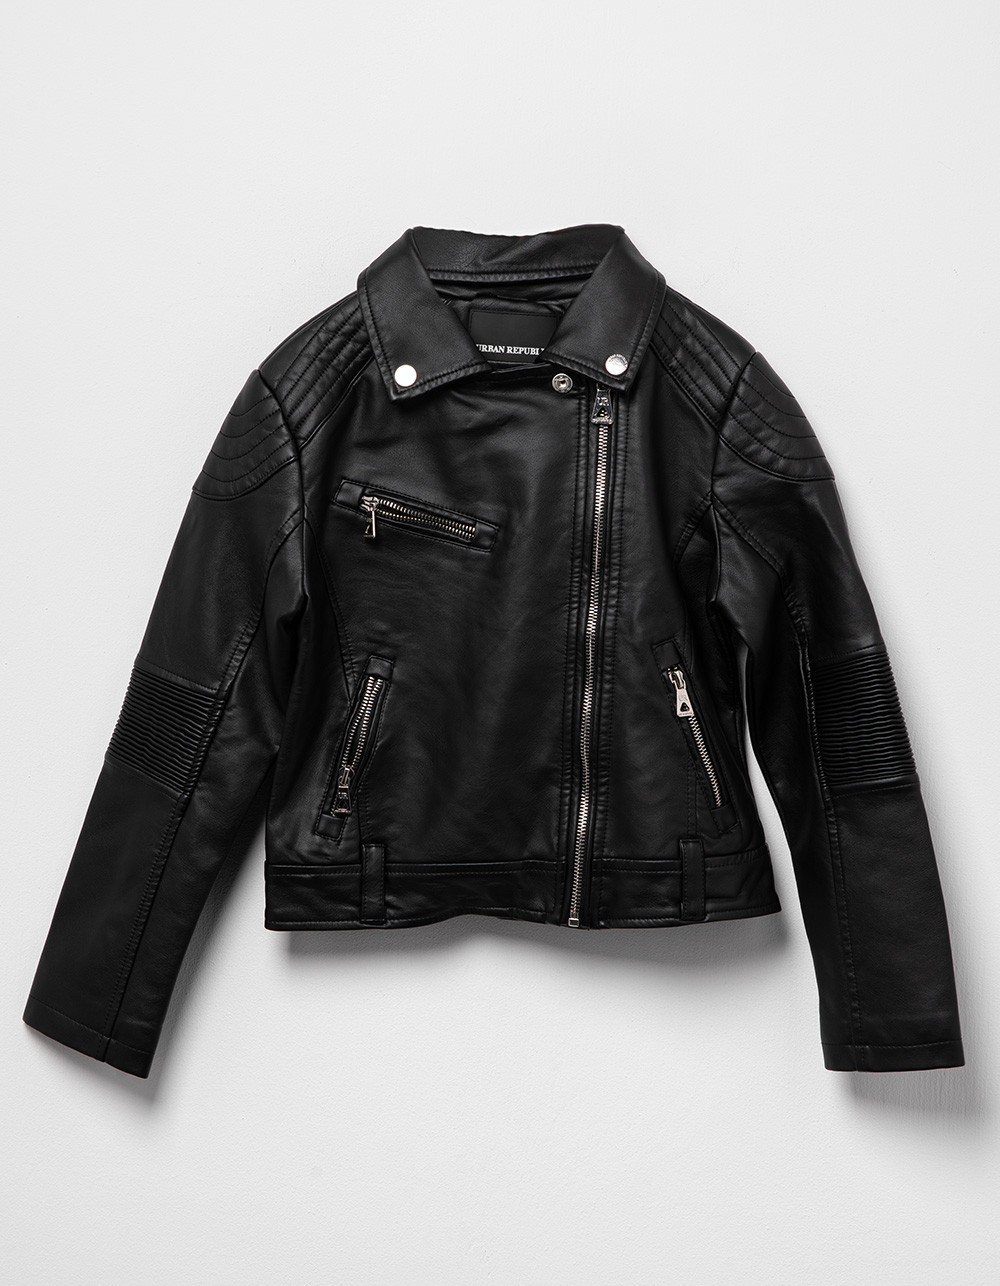 URBAN REPUBLIC Girls Moto Jacket - BLACK | Tillys